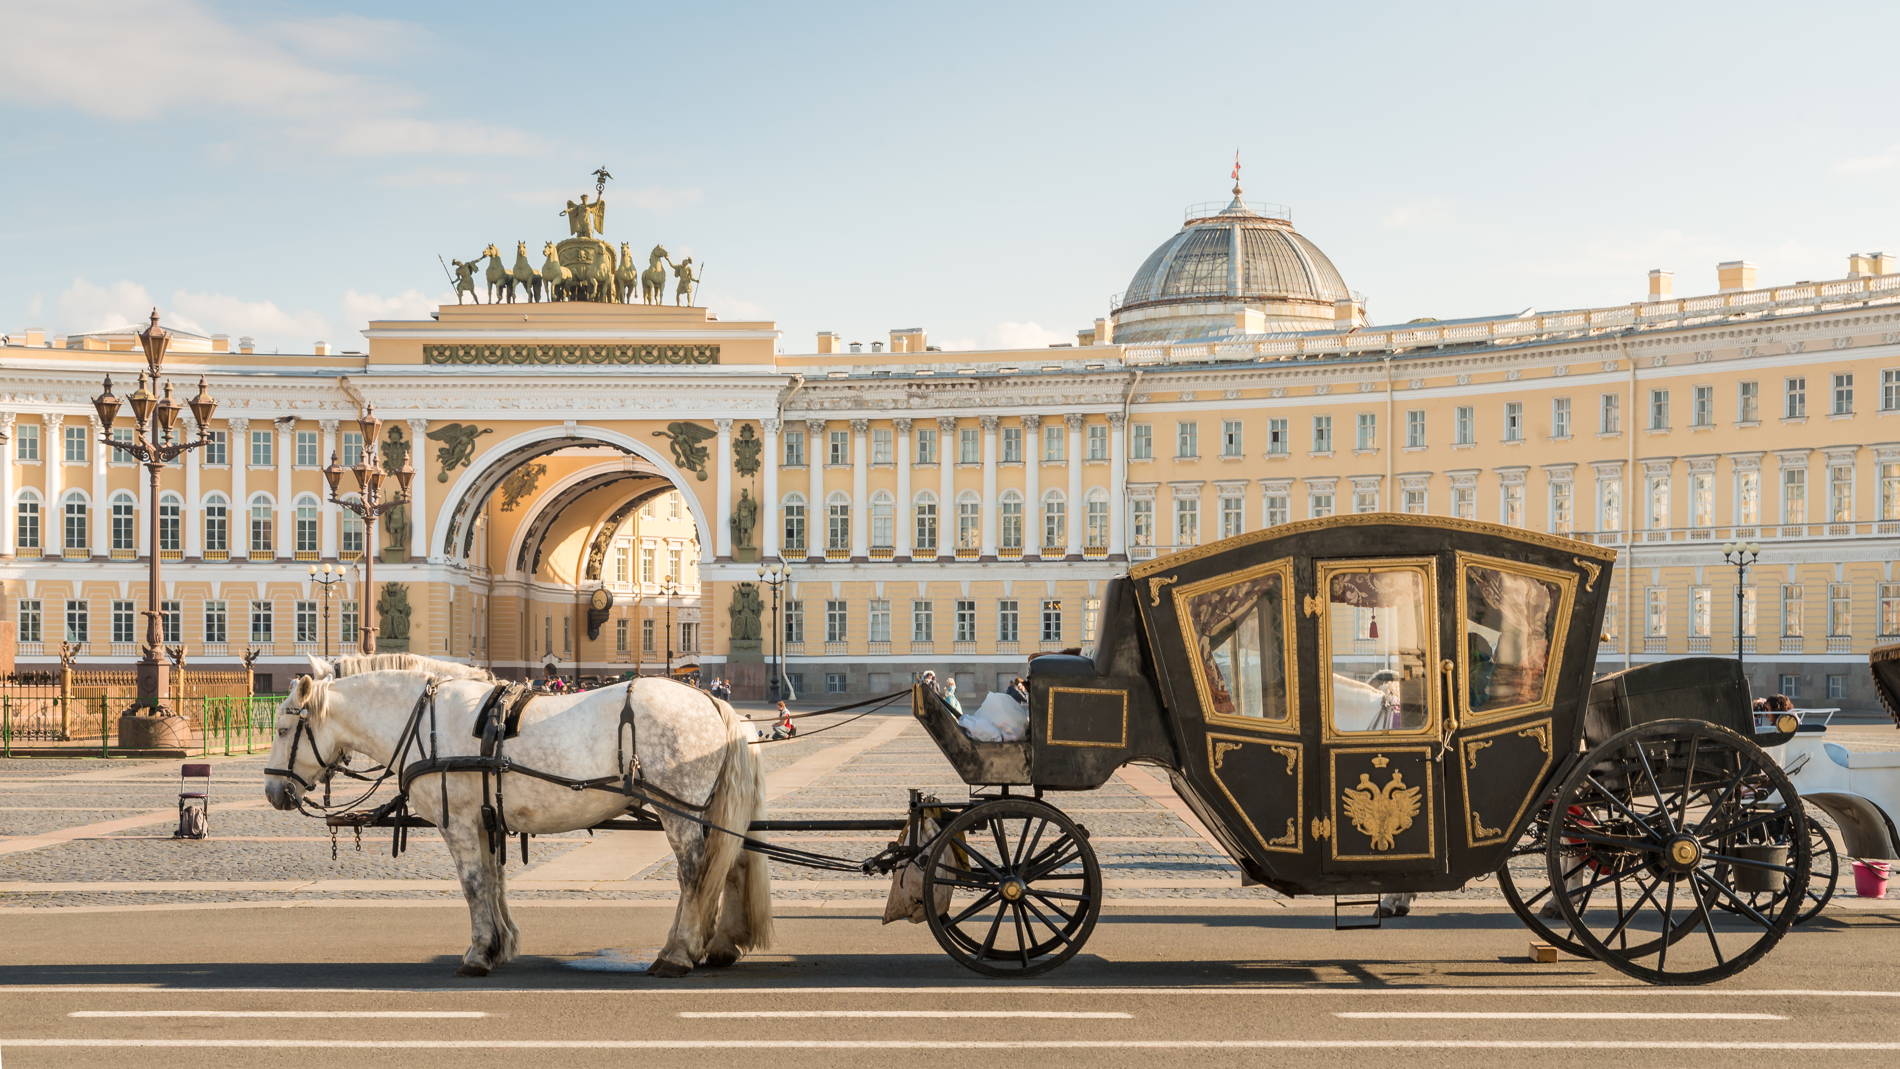 Эрмитаж: гордость Санкт-Петербурга и музей мирового значения